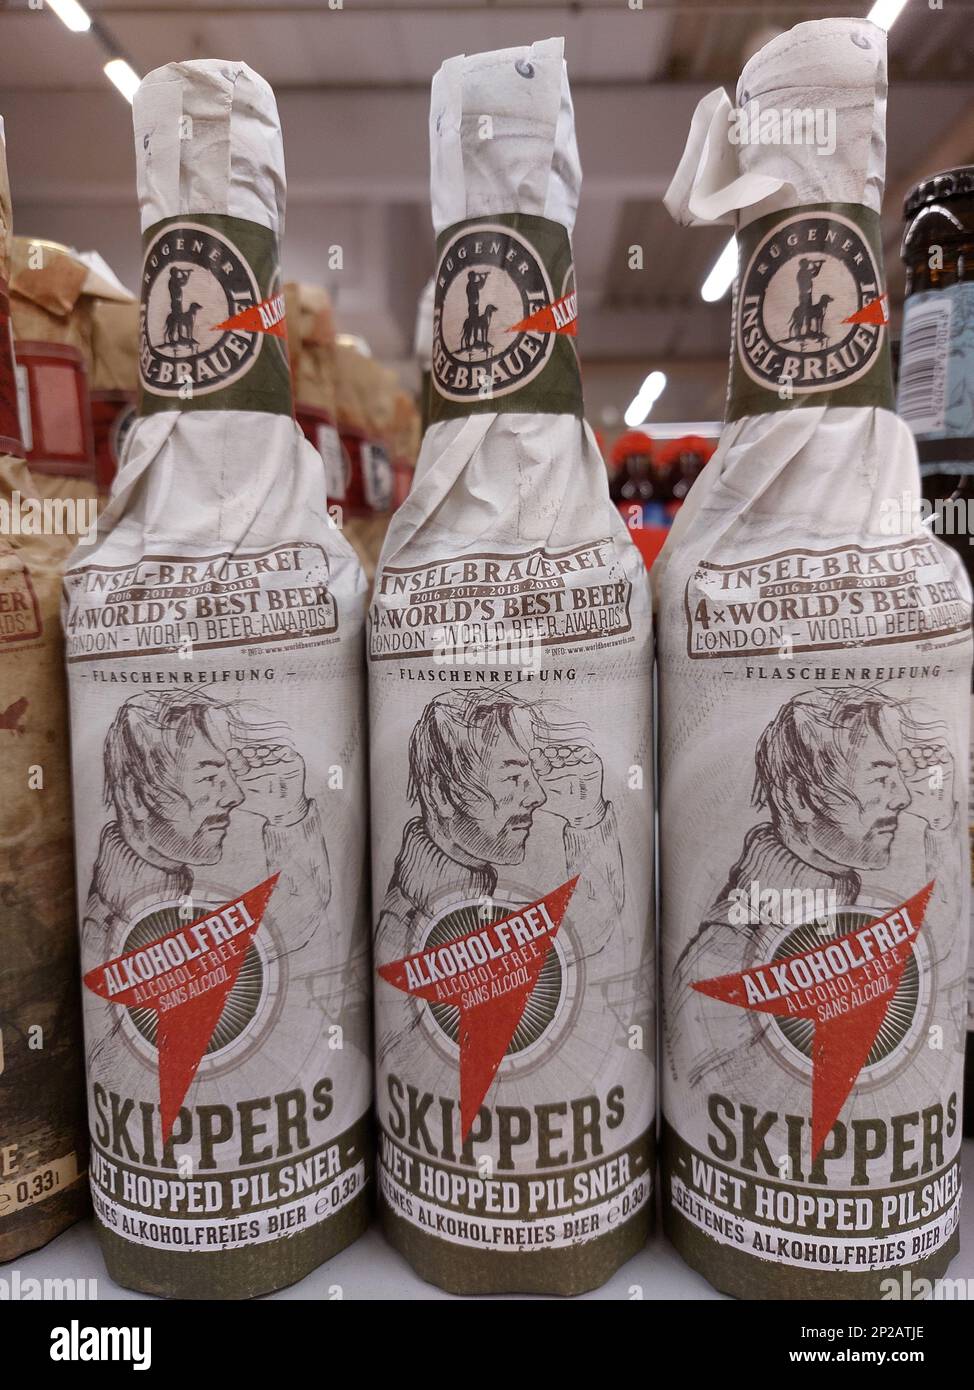 Bouteilles de bière Skippers sans alcool par Island Brewery dans un supermarché Banque D'Images